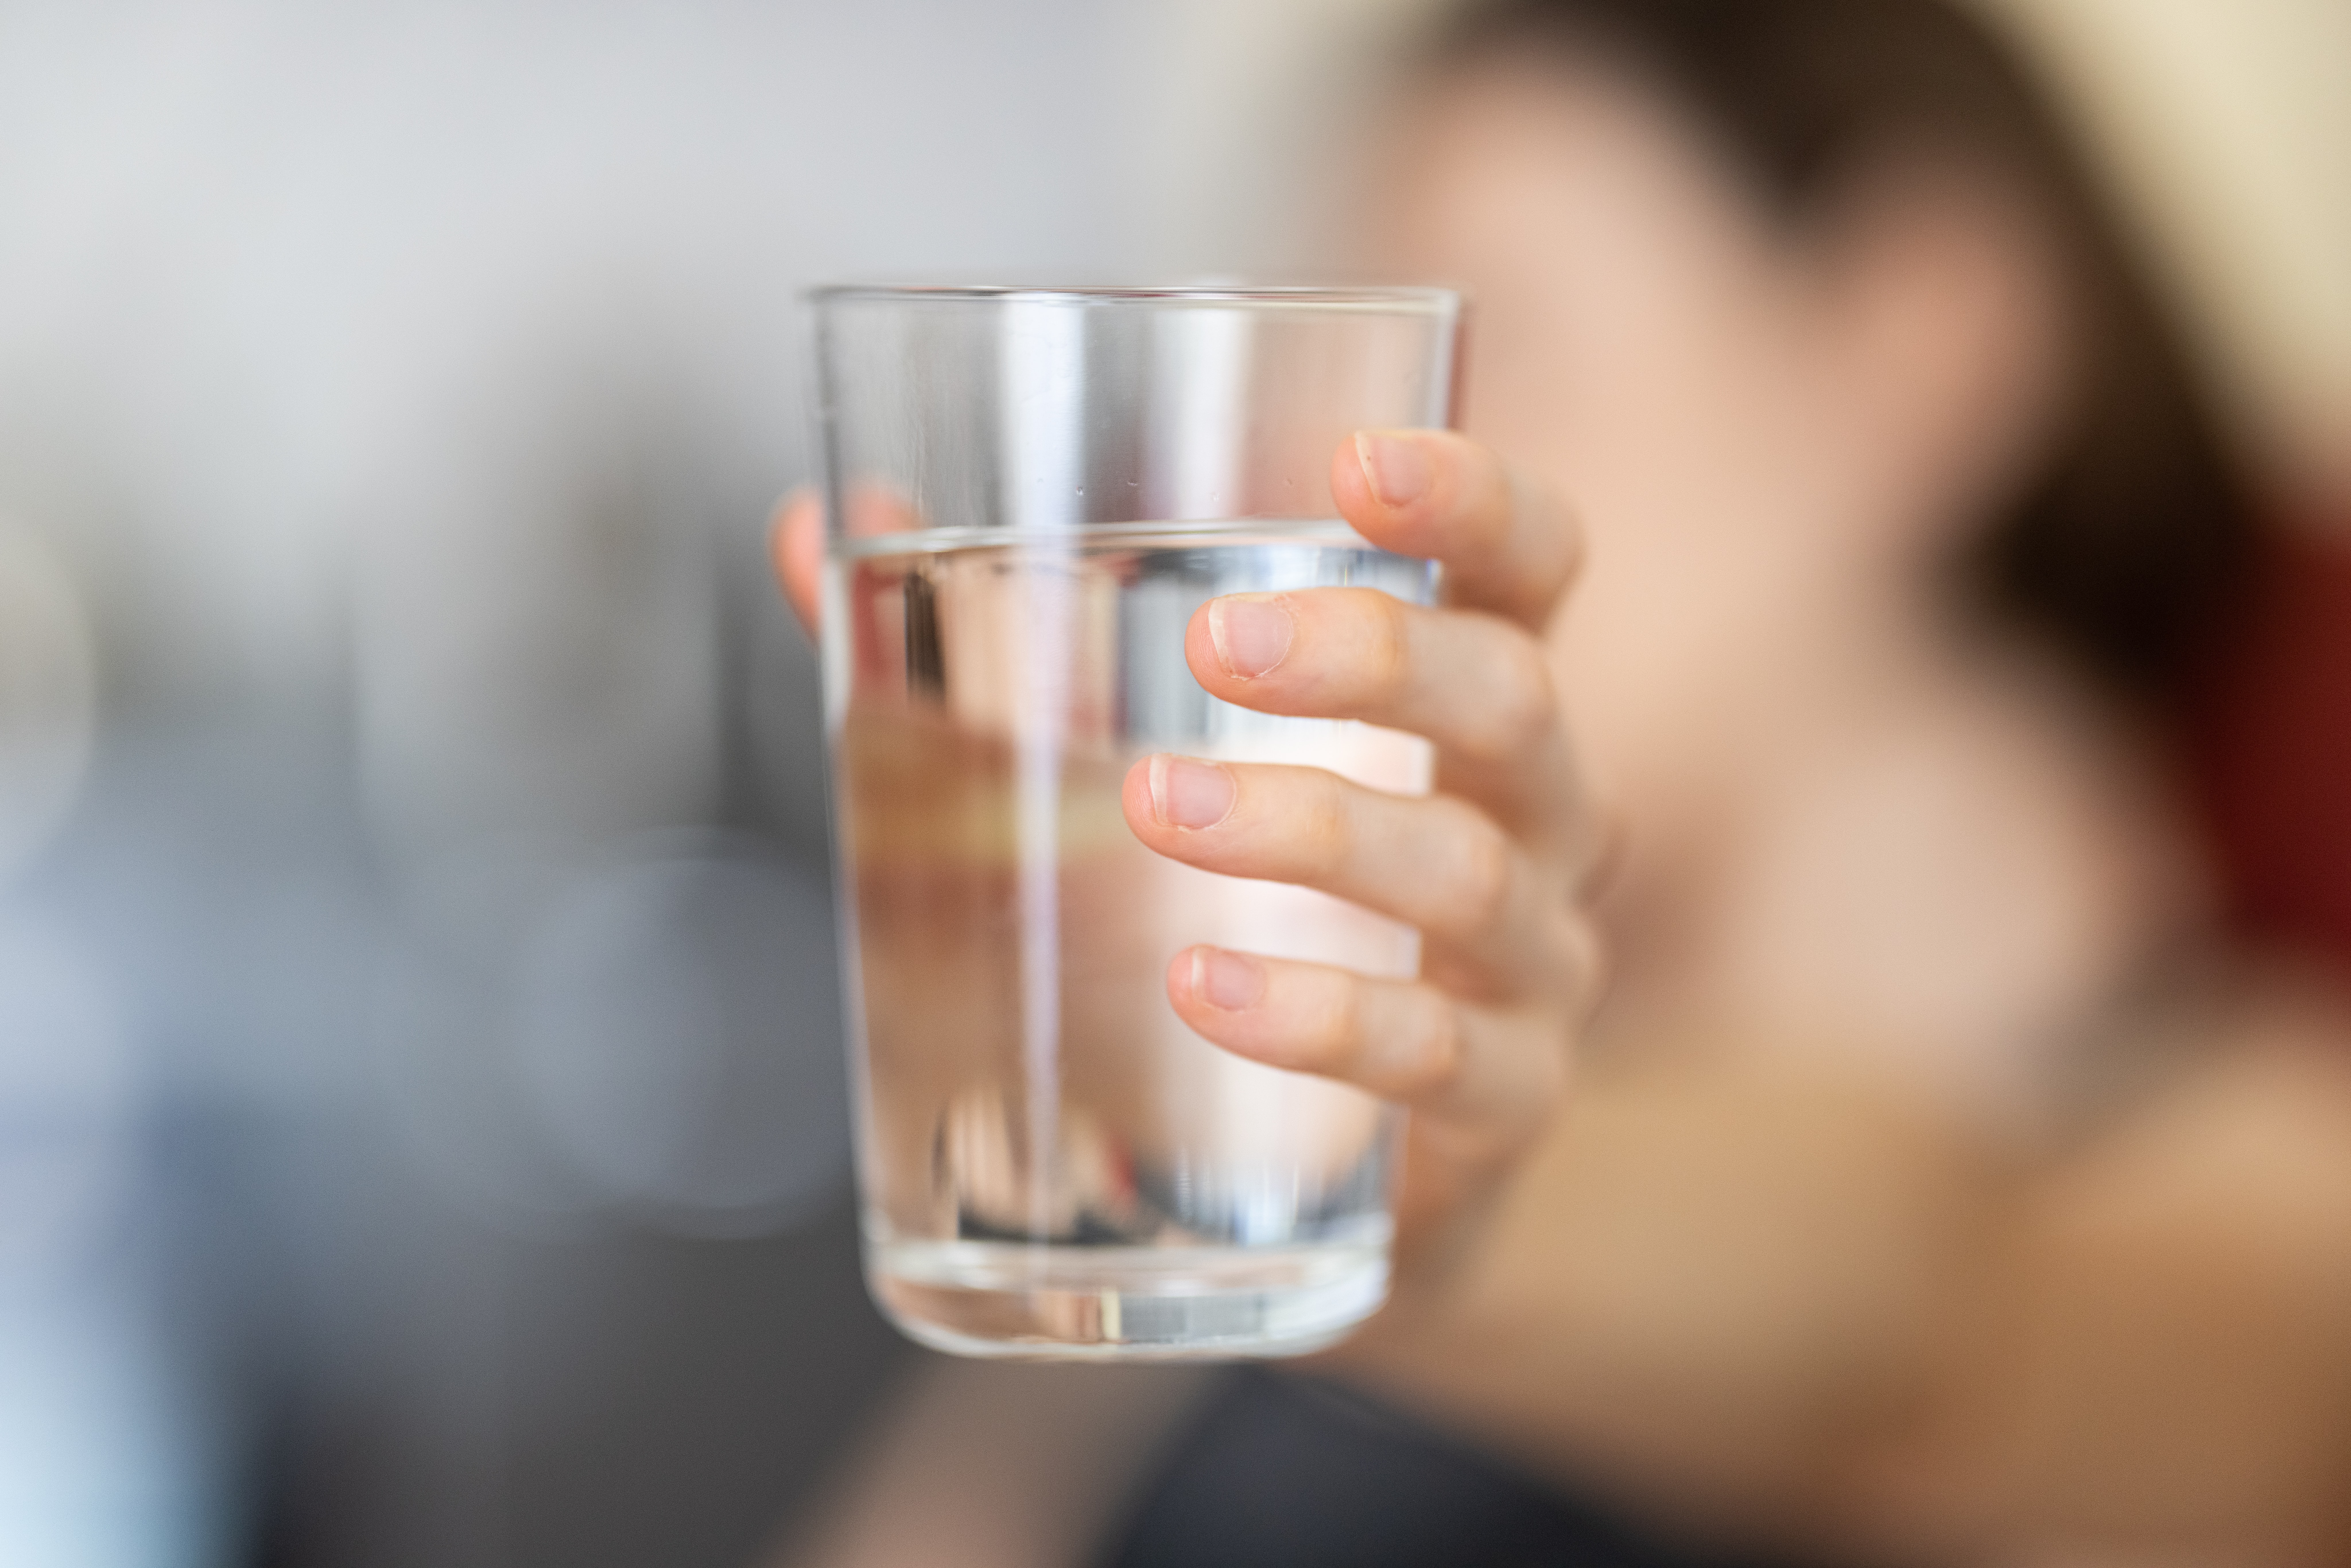 NE PRETERUJTE SA TEČNOŠĆU Četiri signala da pijete previše vode